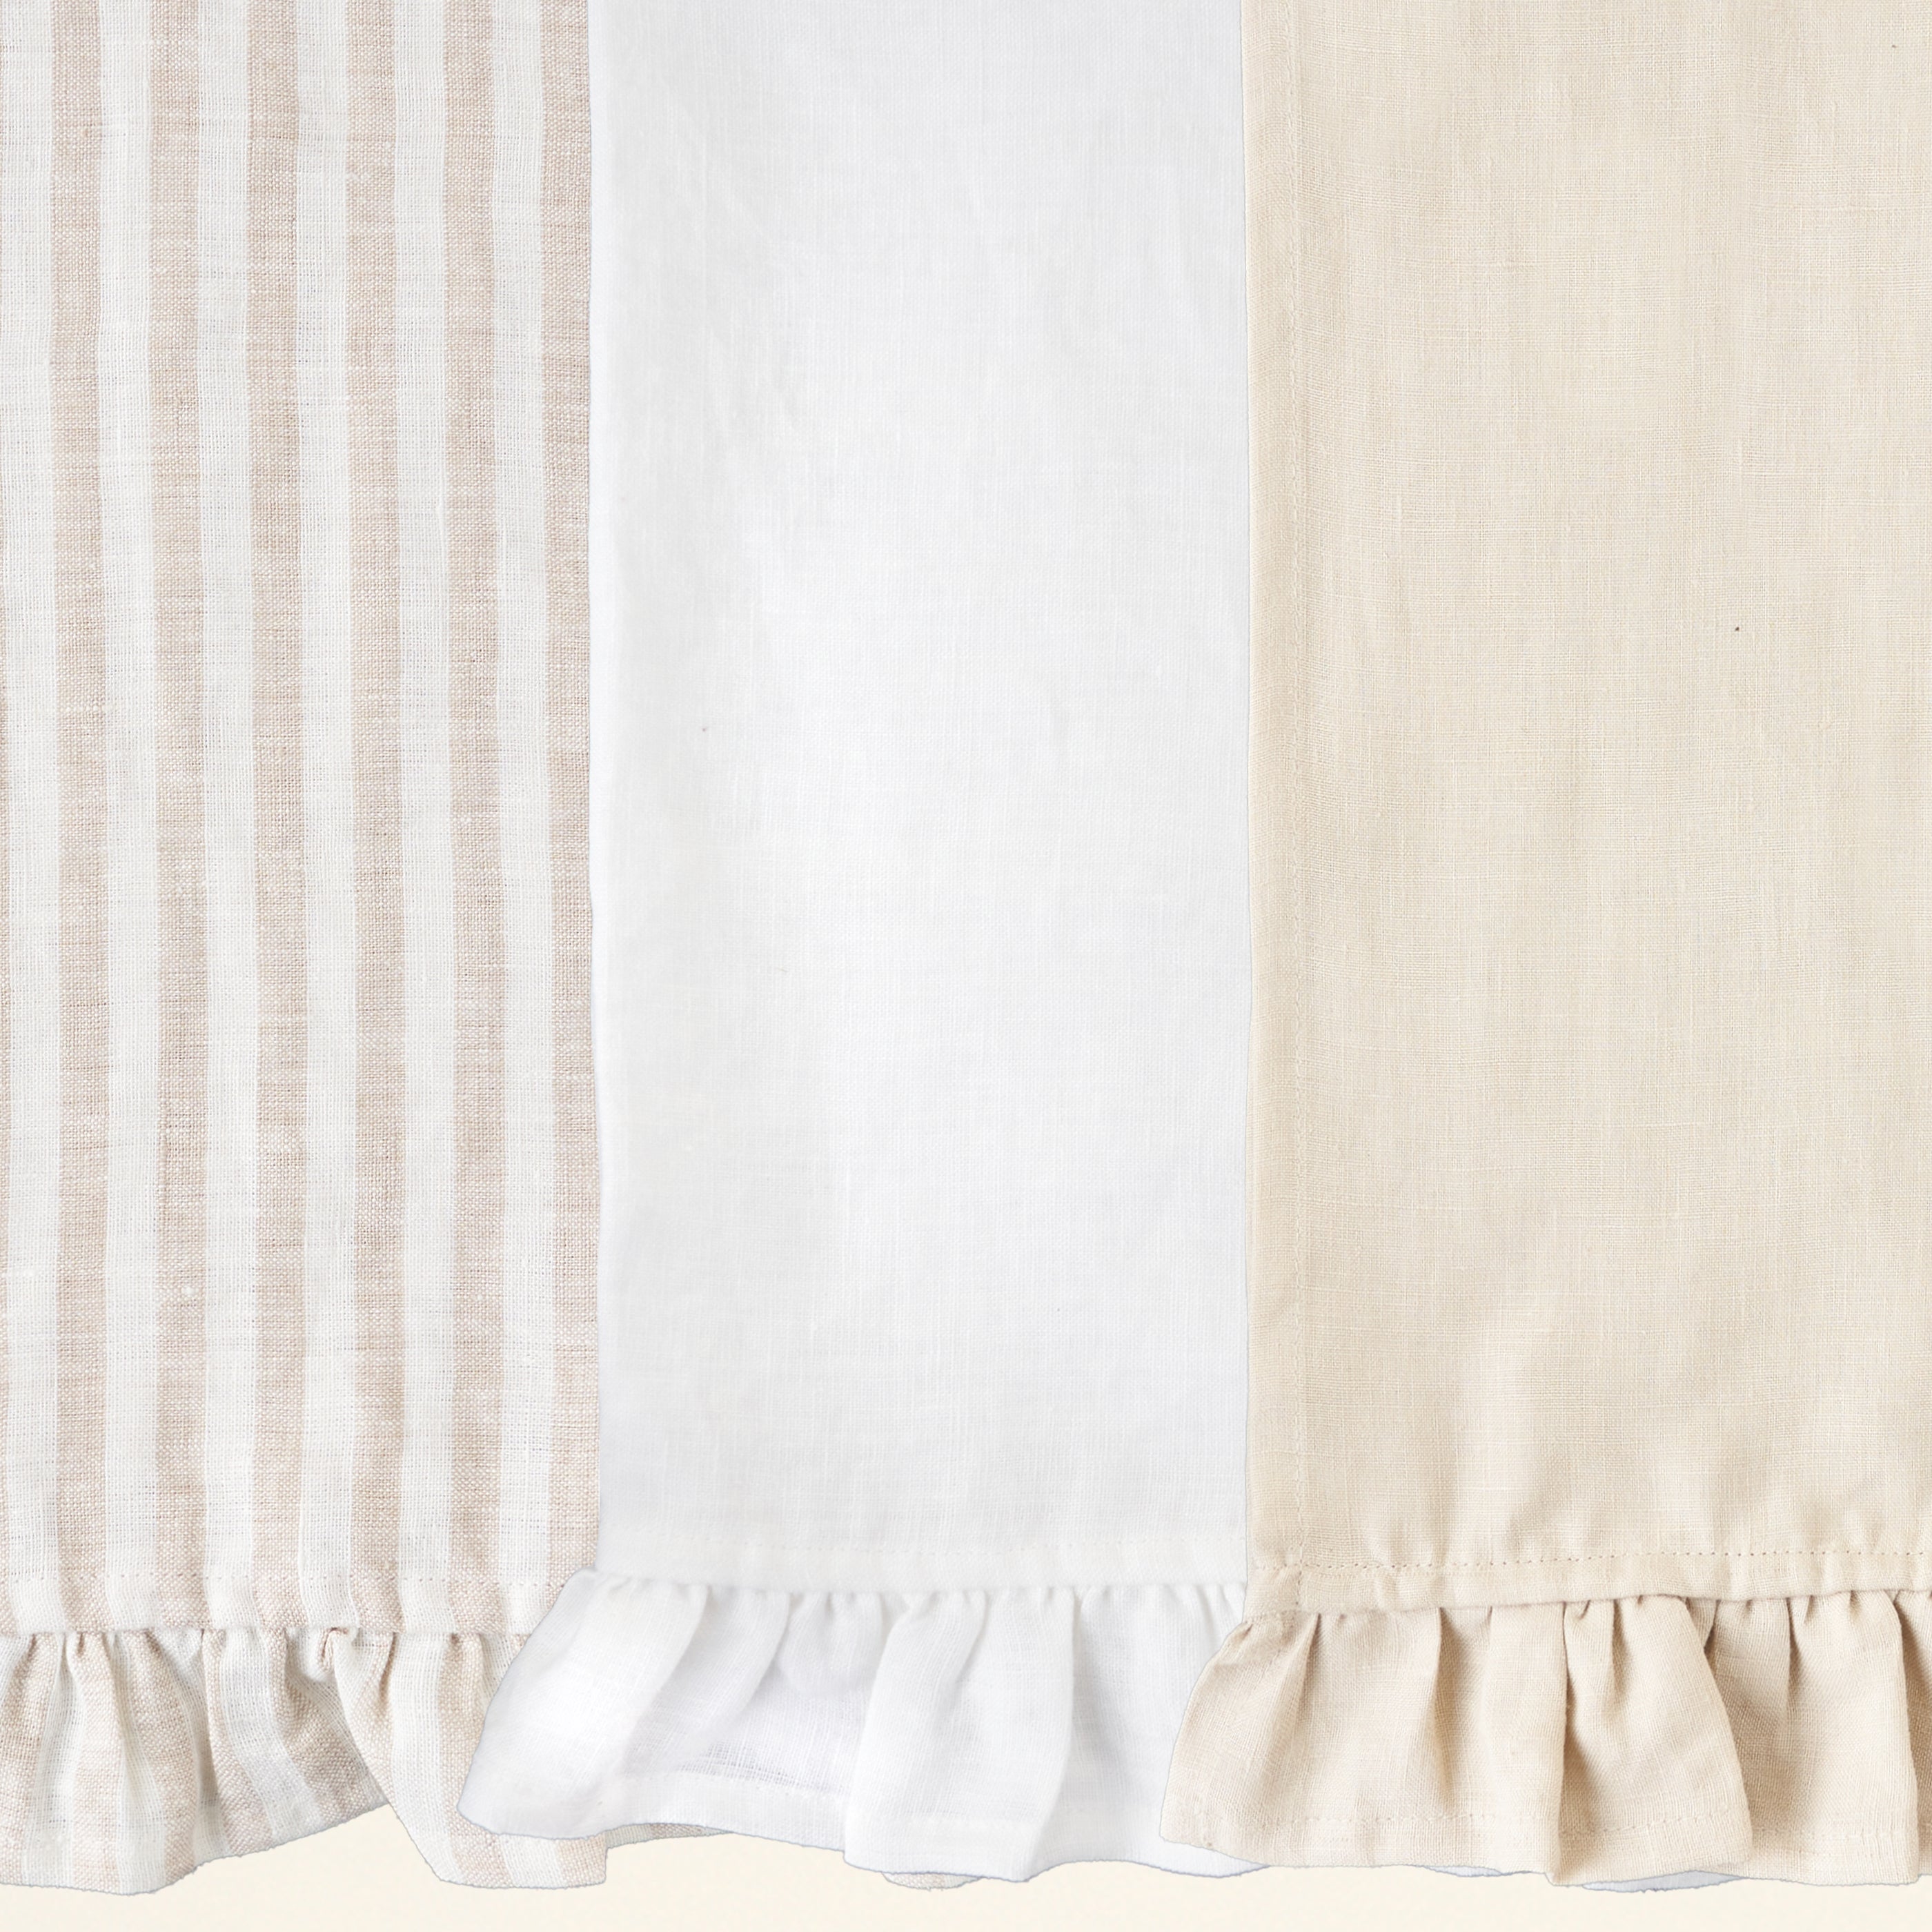 Ruffled Linen Tea Towel, Linen Kitchen Towels Bulk, Natural Linen